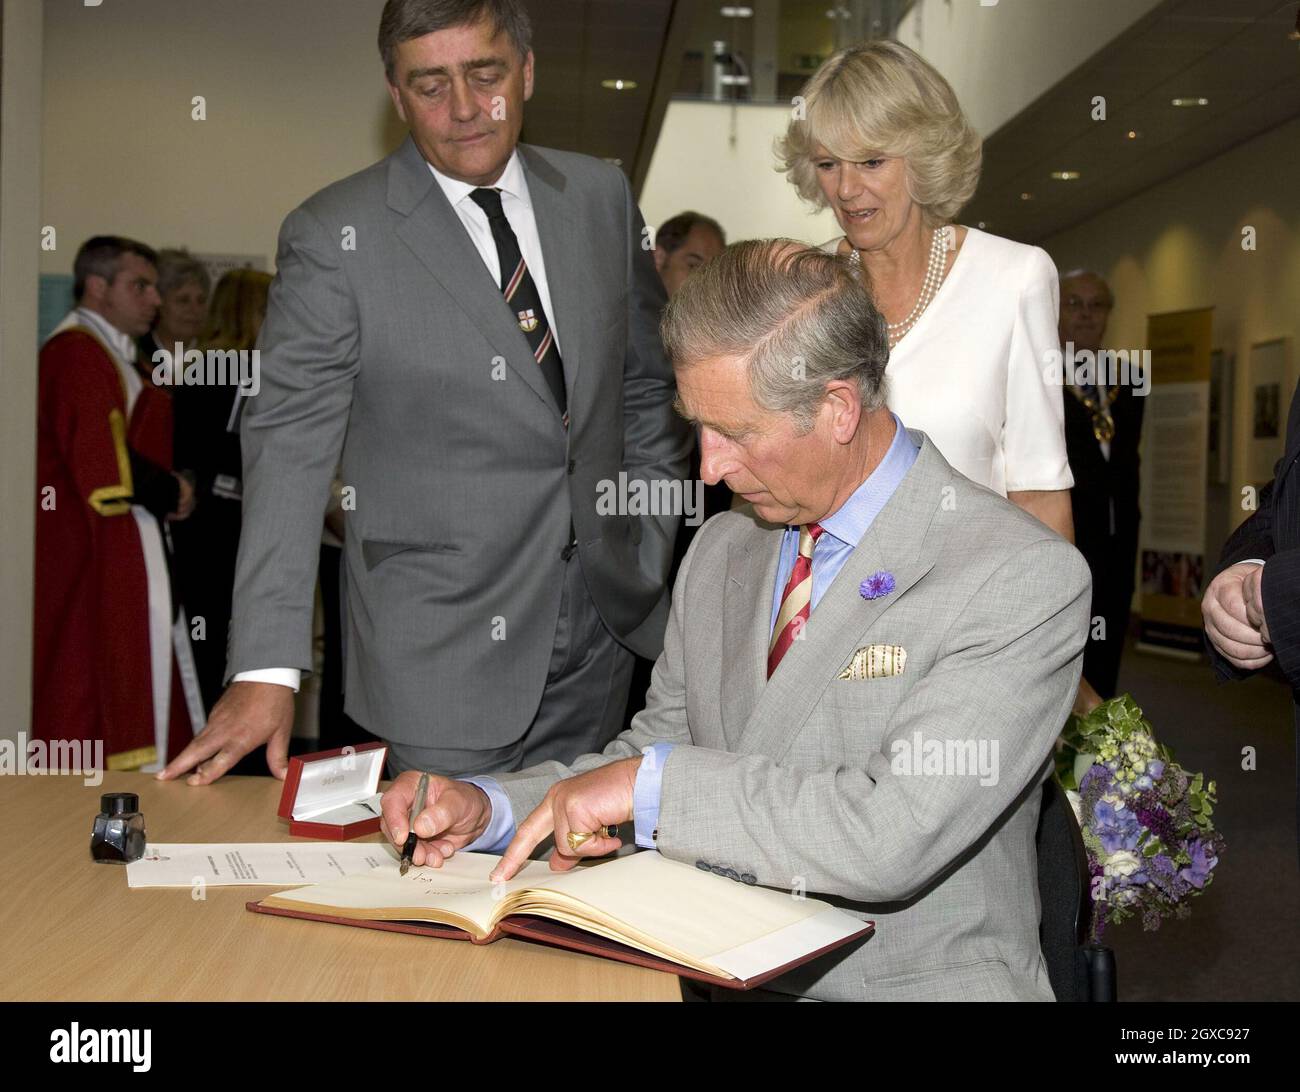 Le Prince Charles, Prince de Galles, Camilla, Duchesse de Cornwall et le duc de Westminster visitent l'Université de Chester, en Angleterre. Banque D'Images